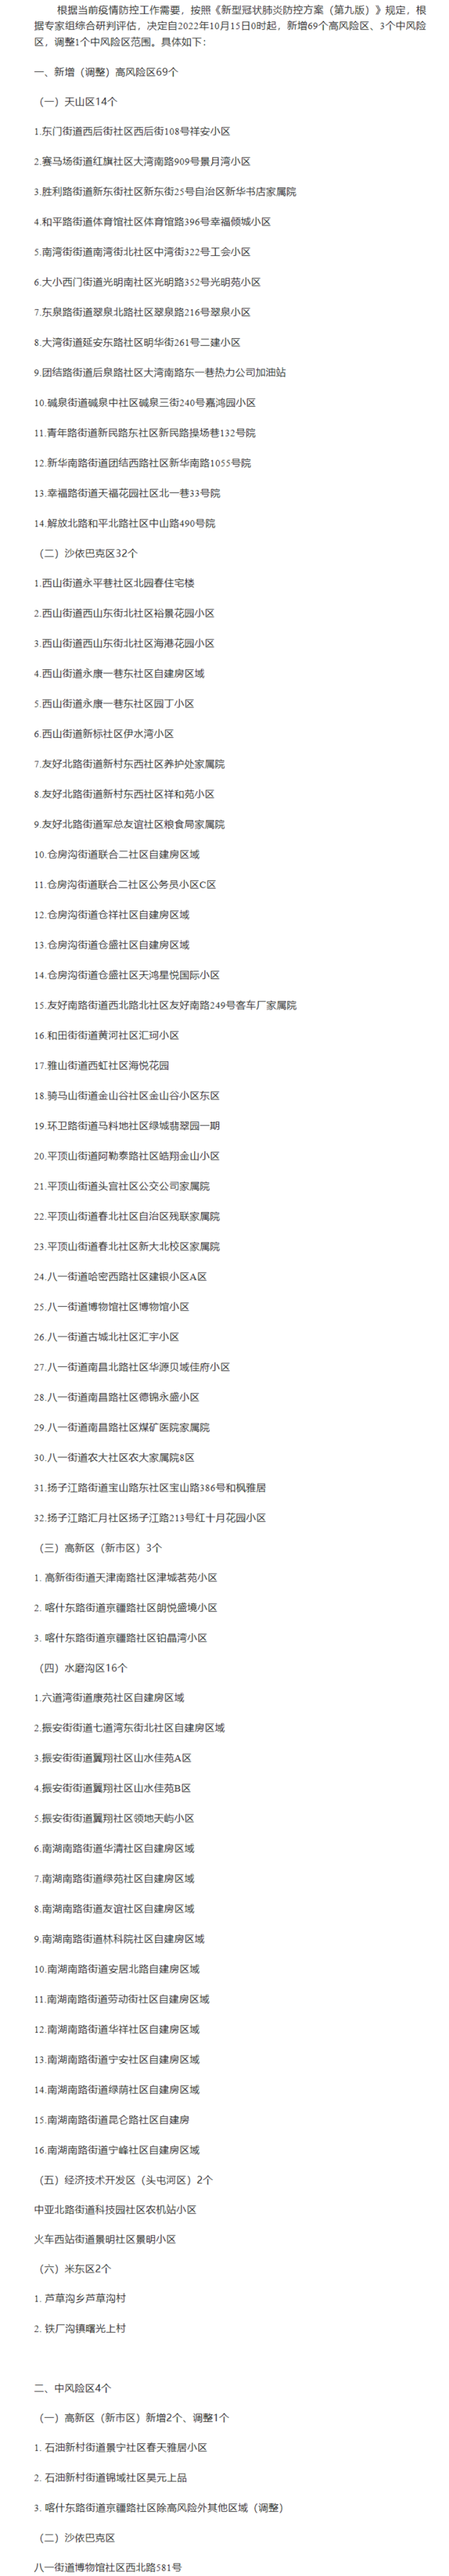 郑州正式发布房票政策，江苏、浙江等多地跟进 - PeraPlay MAX - 博牛社区 百度热点快讯